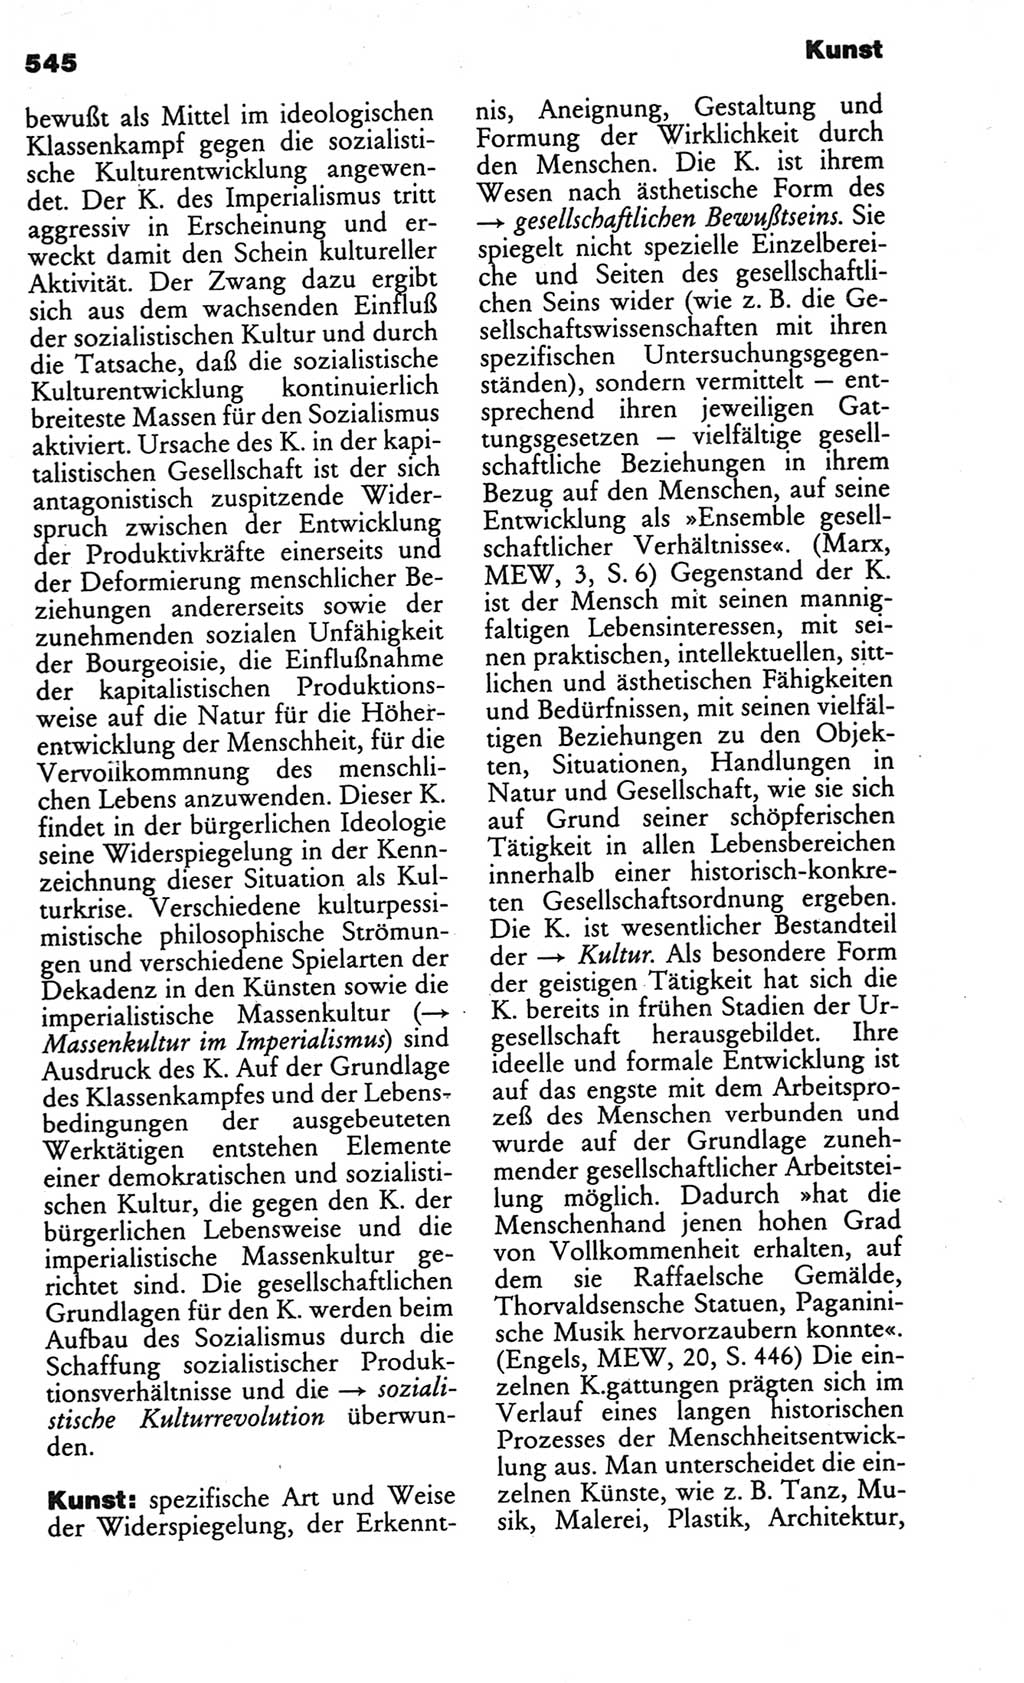 Kleines politisches Wörterbuch [Deutsche Demokratische Republik (DDR)] 1986, Seite 545 (Kl. pol. Wb. DDR 1986, S. 545)